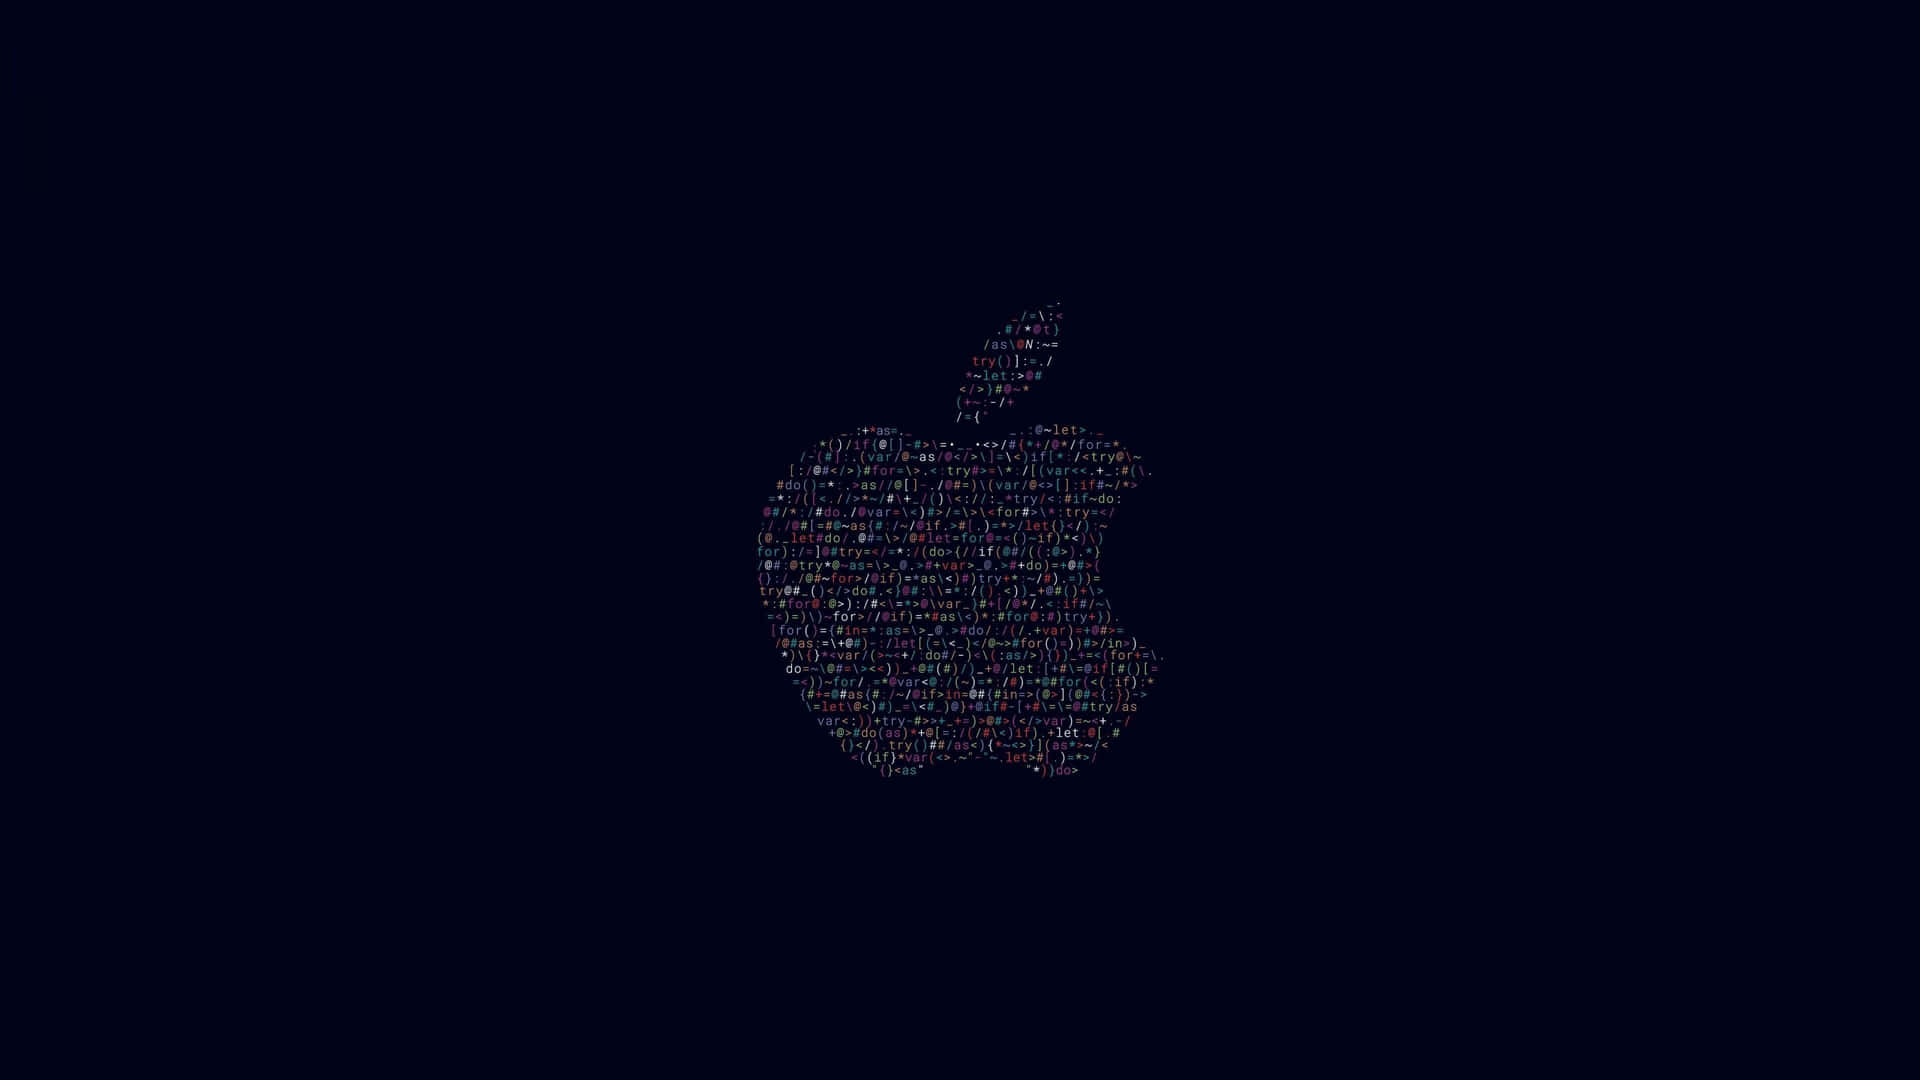 Immagineuno Splendido Wallpaper Apple In Formato 4k